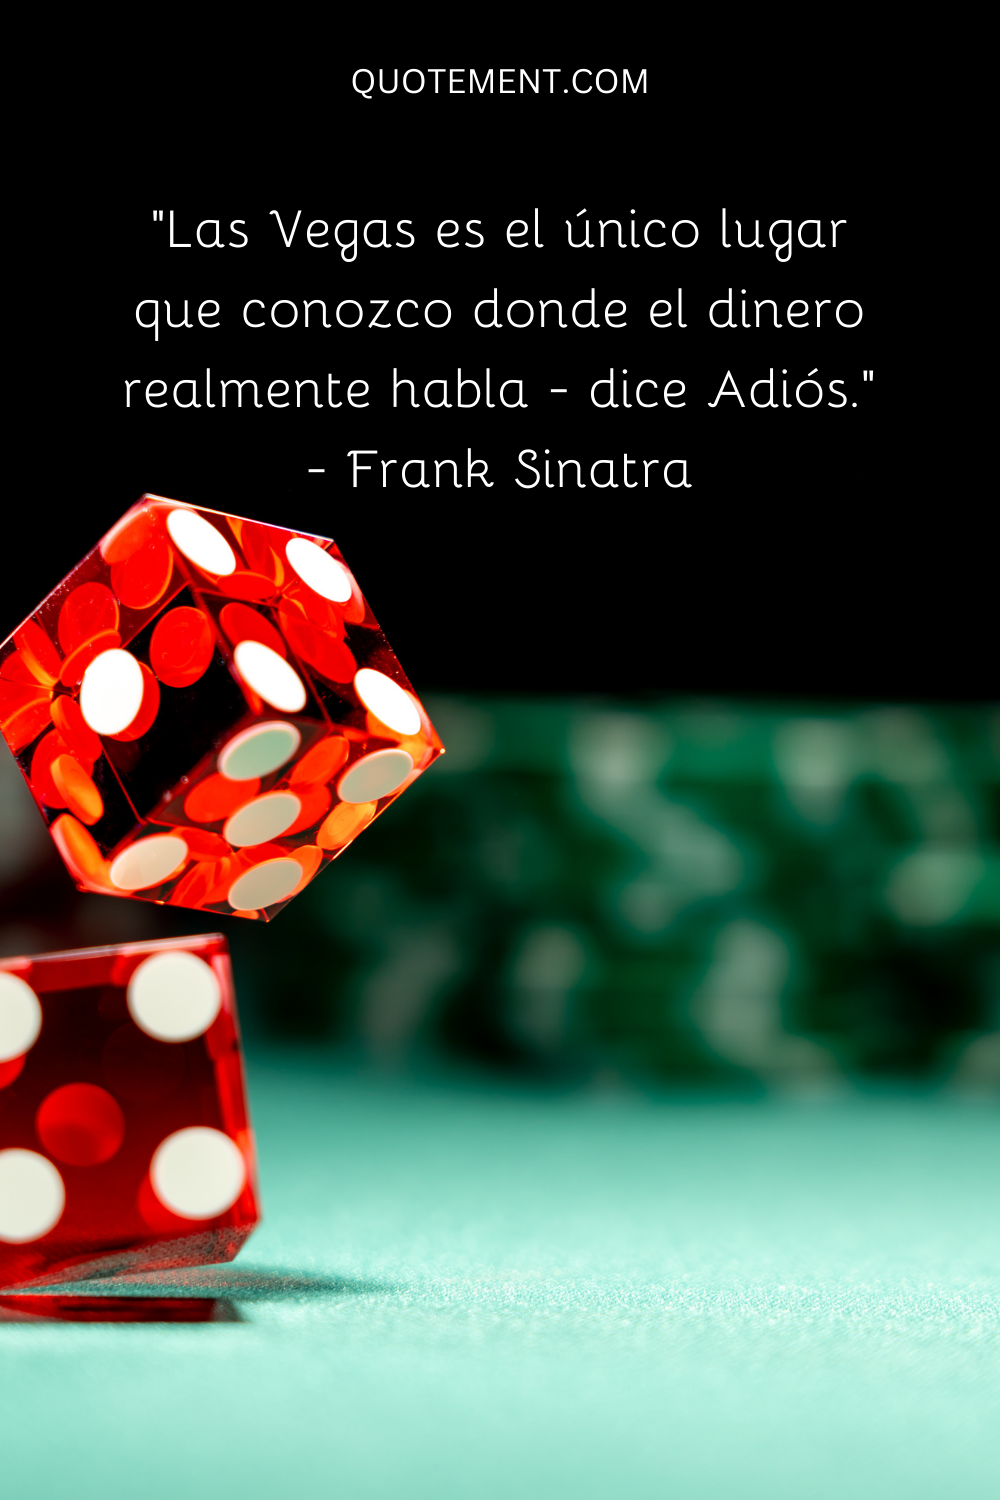 "Las Vegas es el único lugar que conozco donde el dinero habla de verdad: dice adiós". - Frank Sinatra